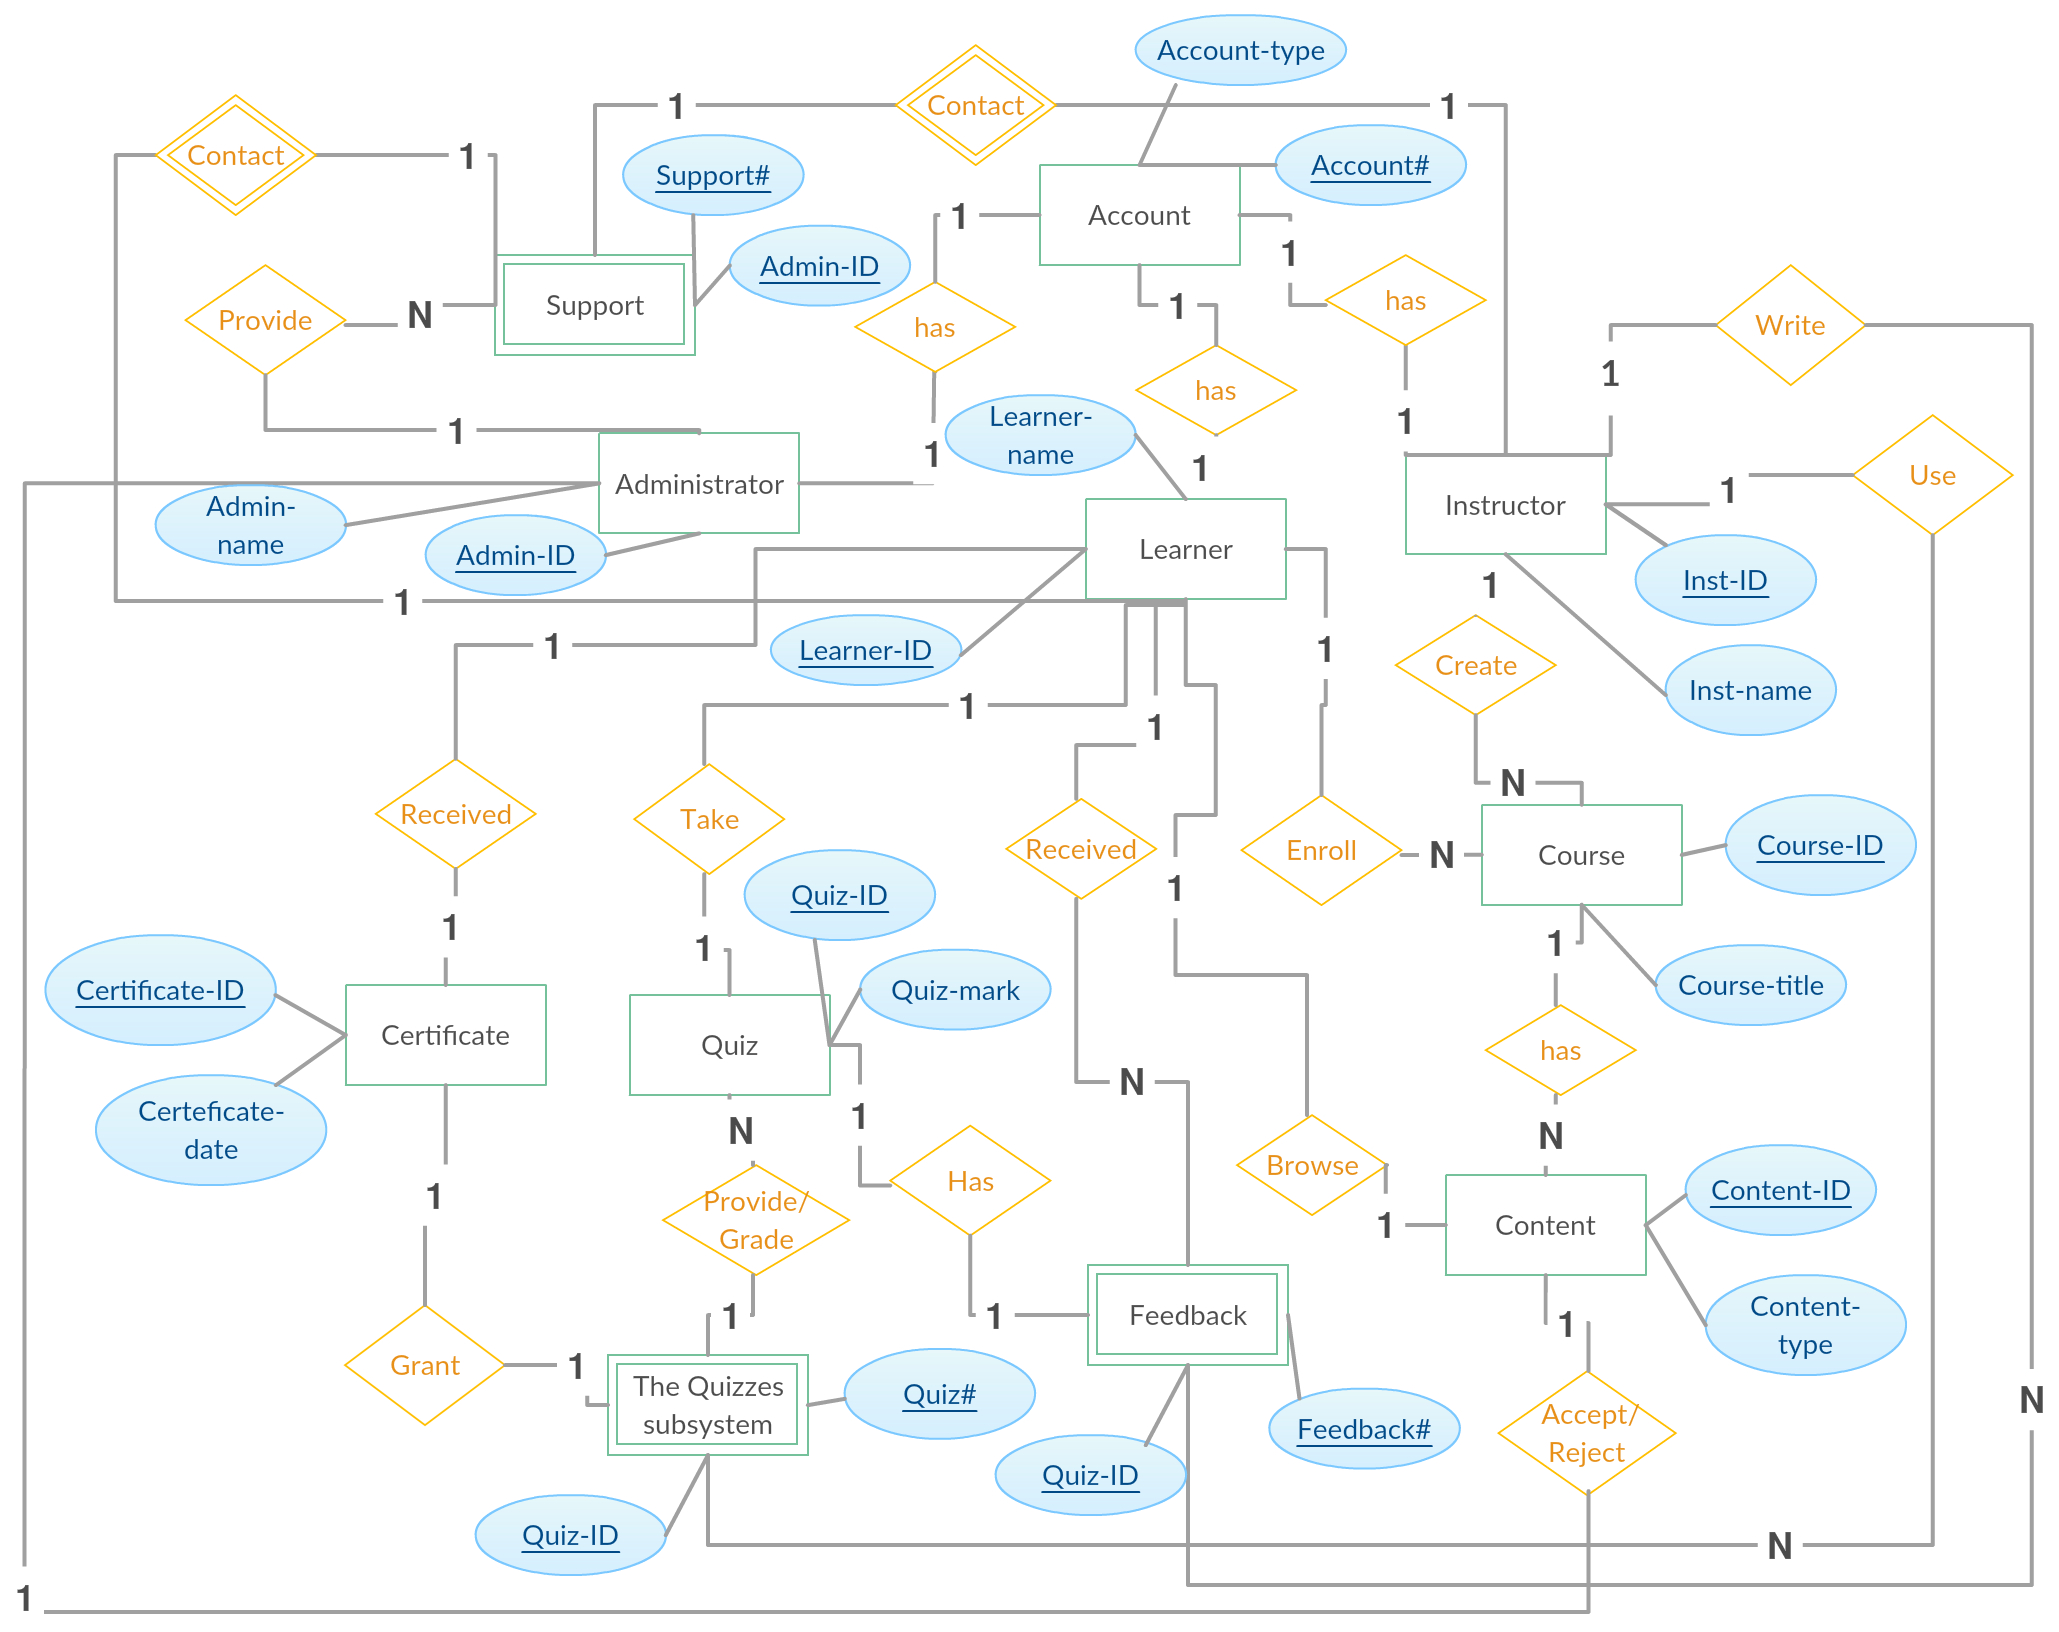 Entity Relationship Diagram (Er Diagram) Of E-Learning intended for Er Diagram Dashed Line